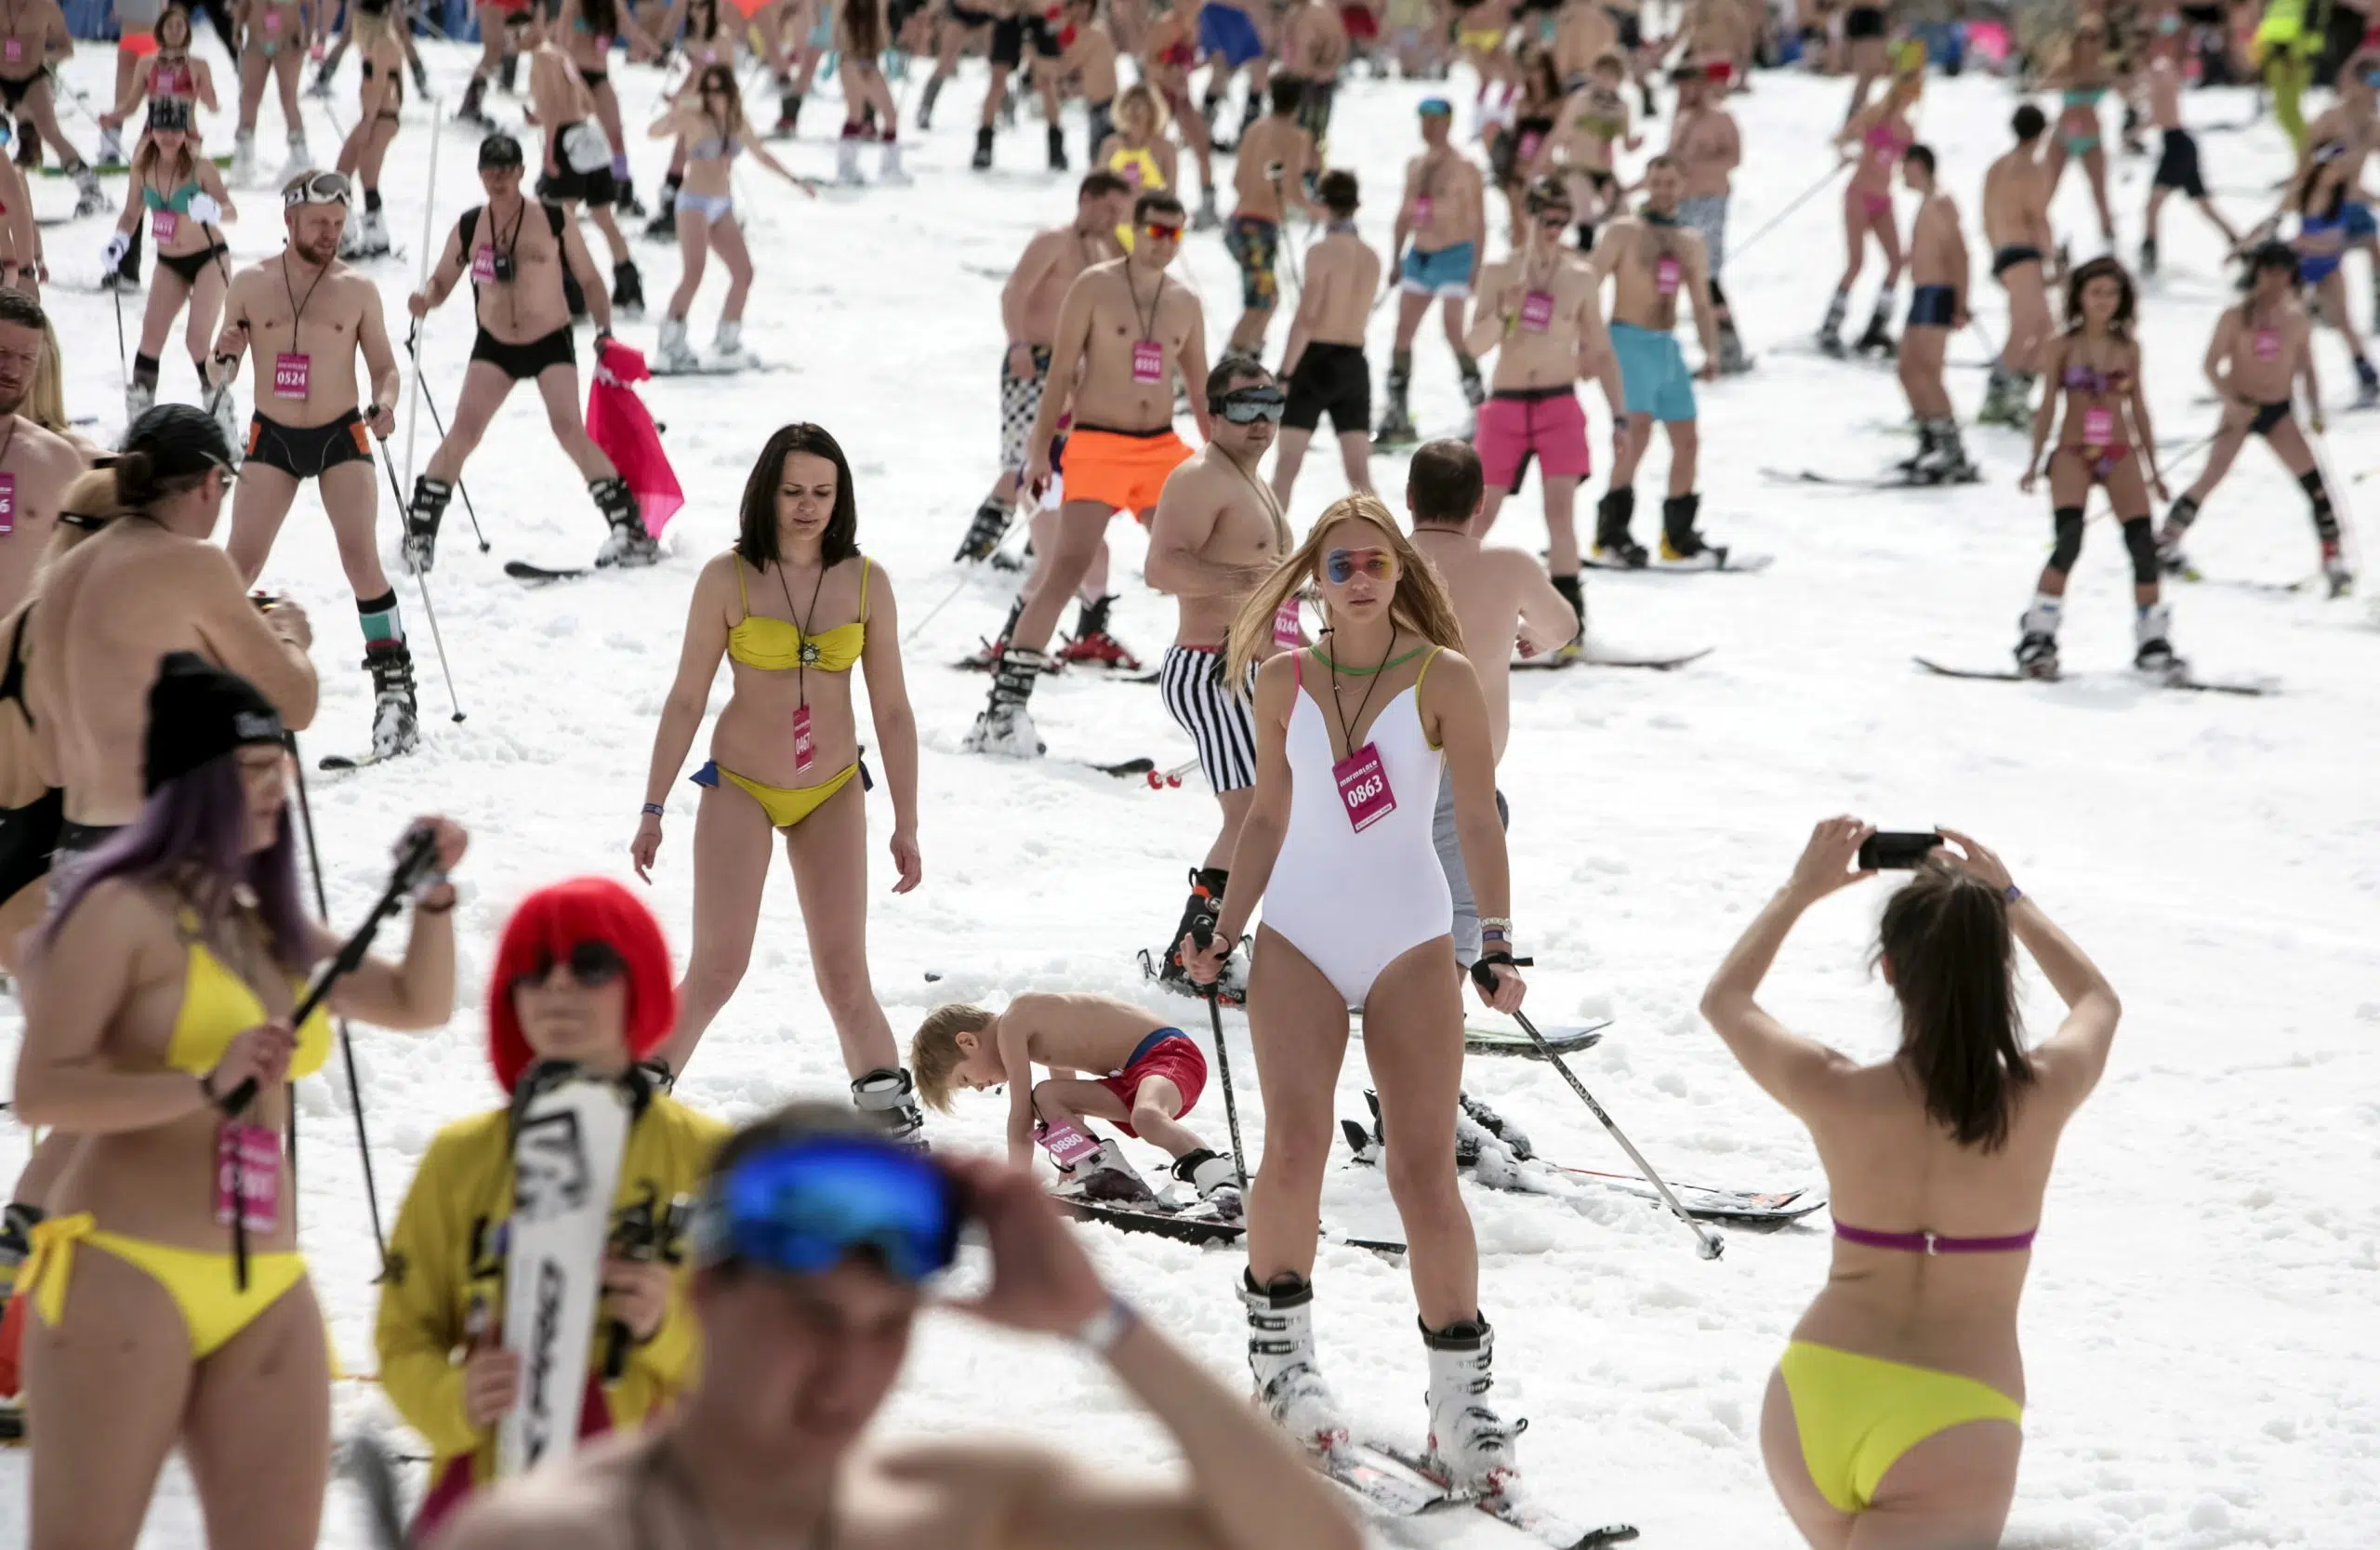 Bikini contest photo skiing